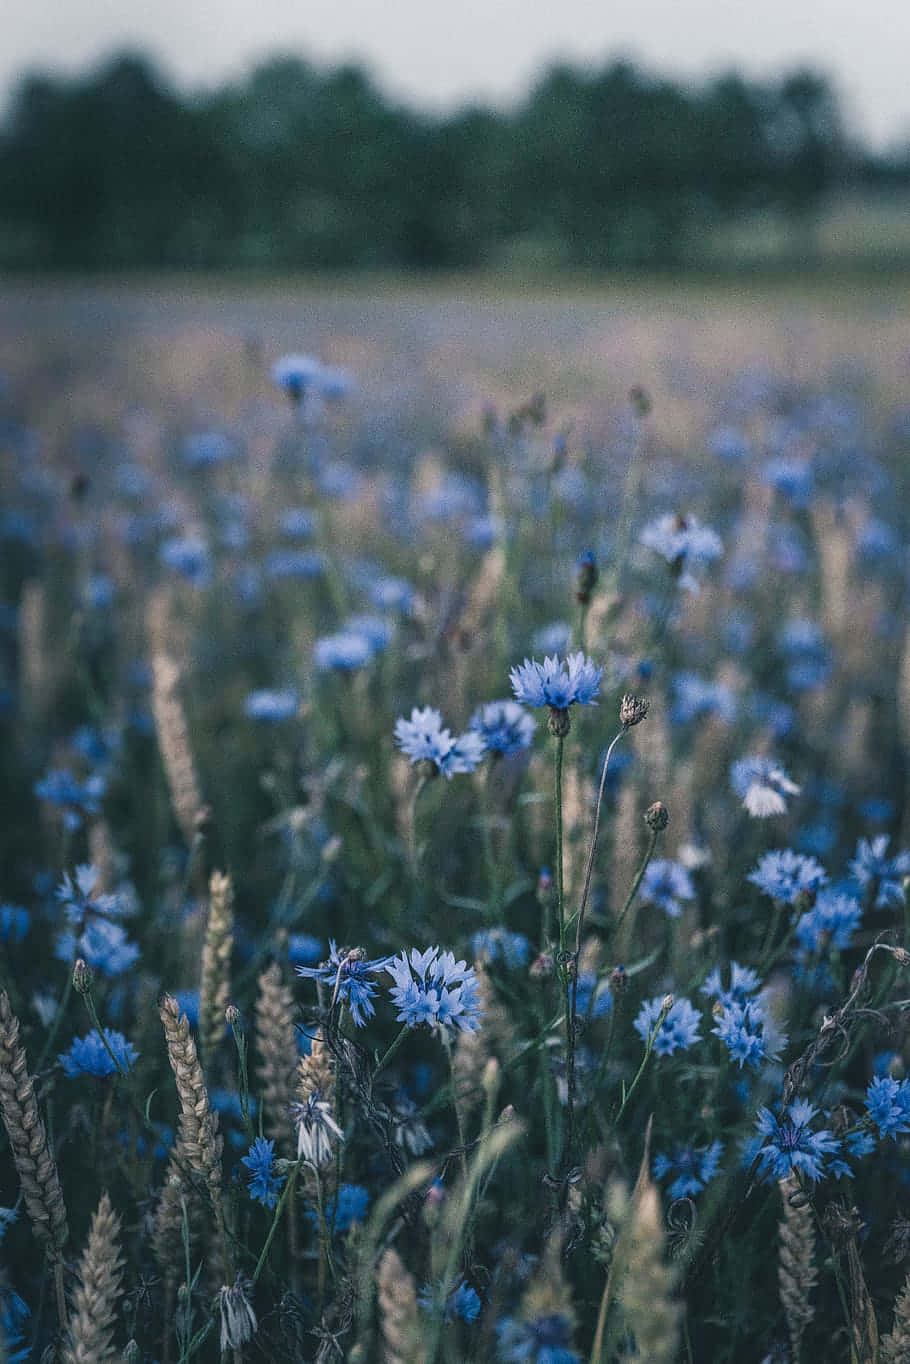 Breath-taking Blue Flower in Full Bloom